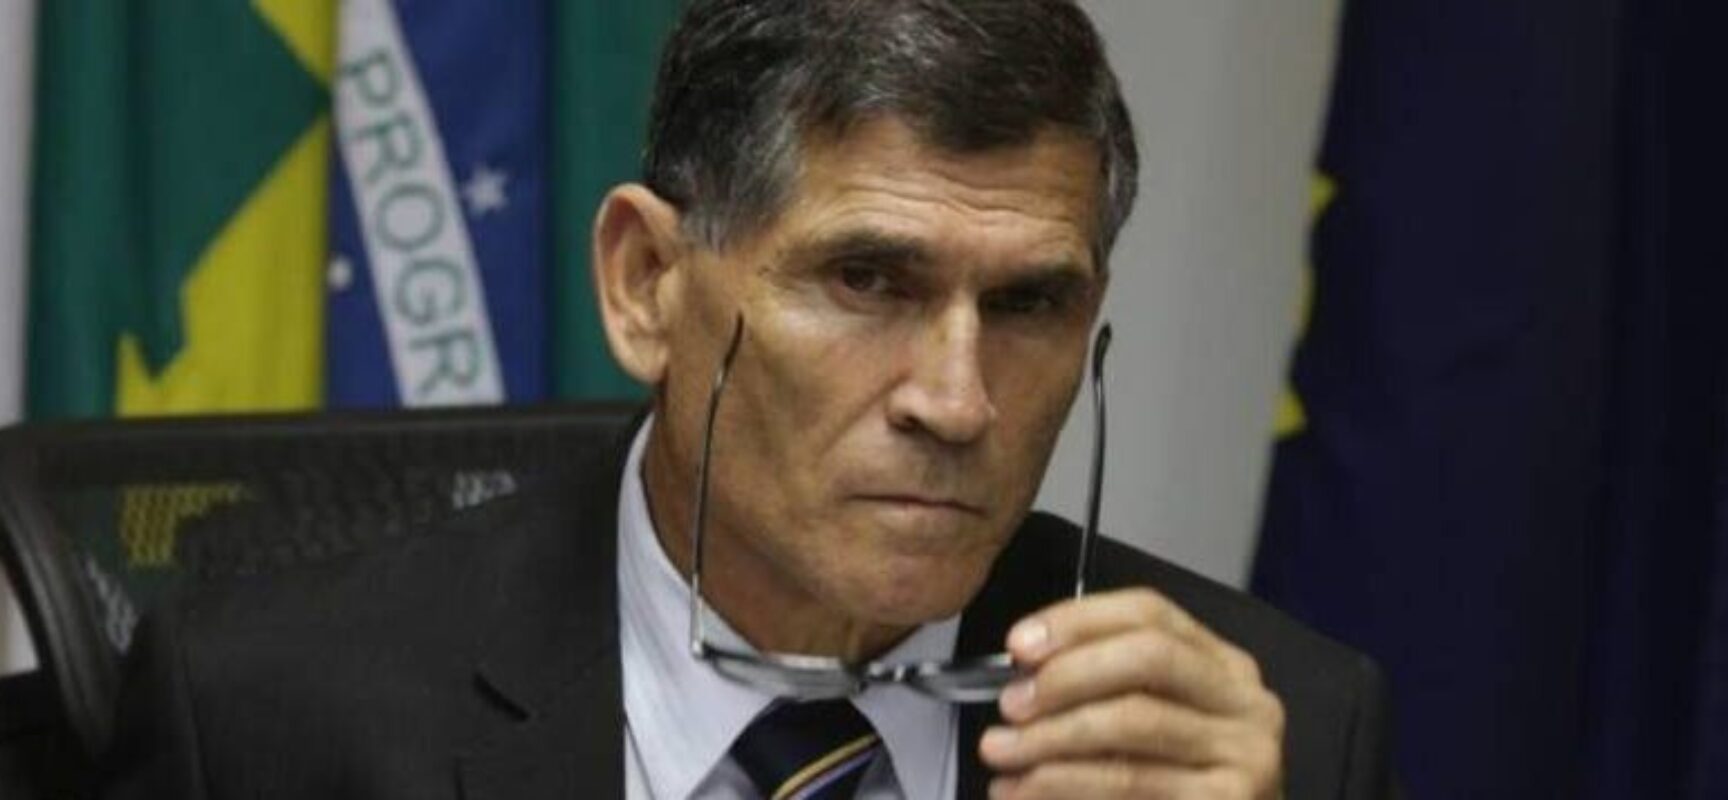 Santos Cruz atribui atos antidemocráticos a fanatismo: “O Brasil está doente”